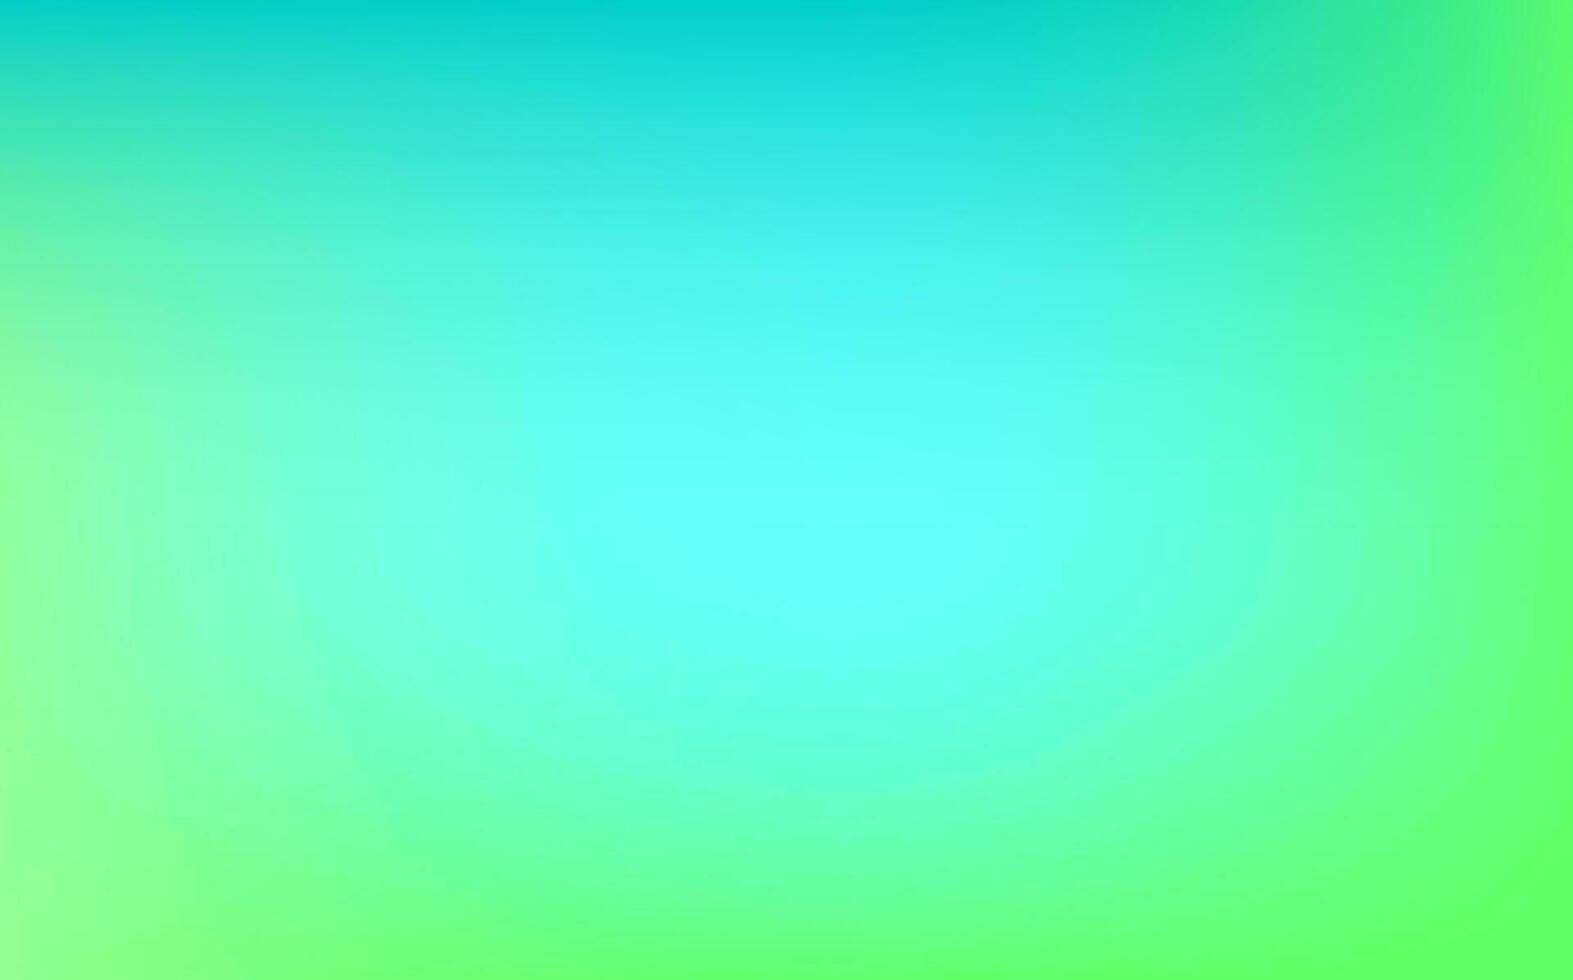 Neon- verschwommen Wellengradient Design mit Grün, Minze Blau Farben.Vektor abstrakt hell Grün Gradient Gittergewebe. vektor